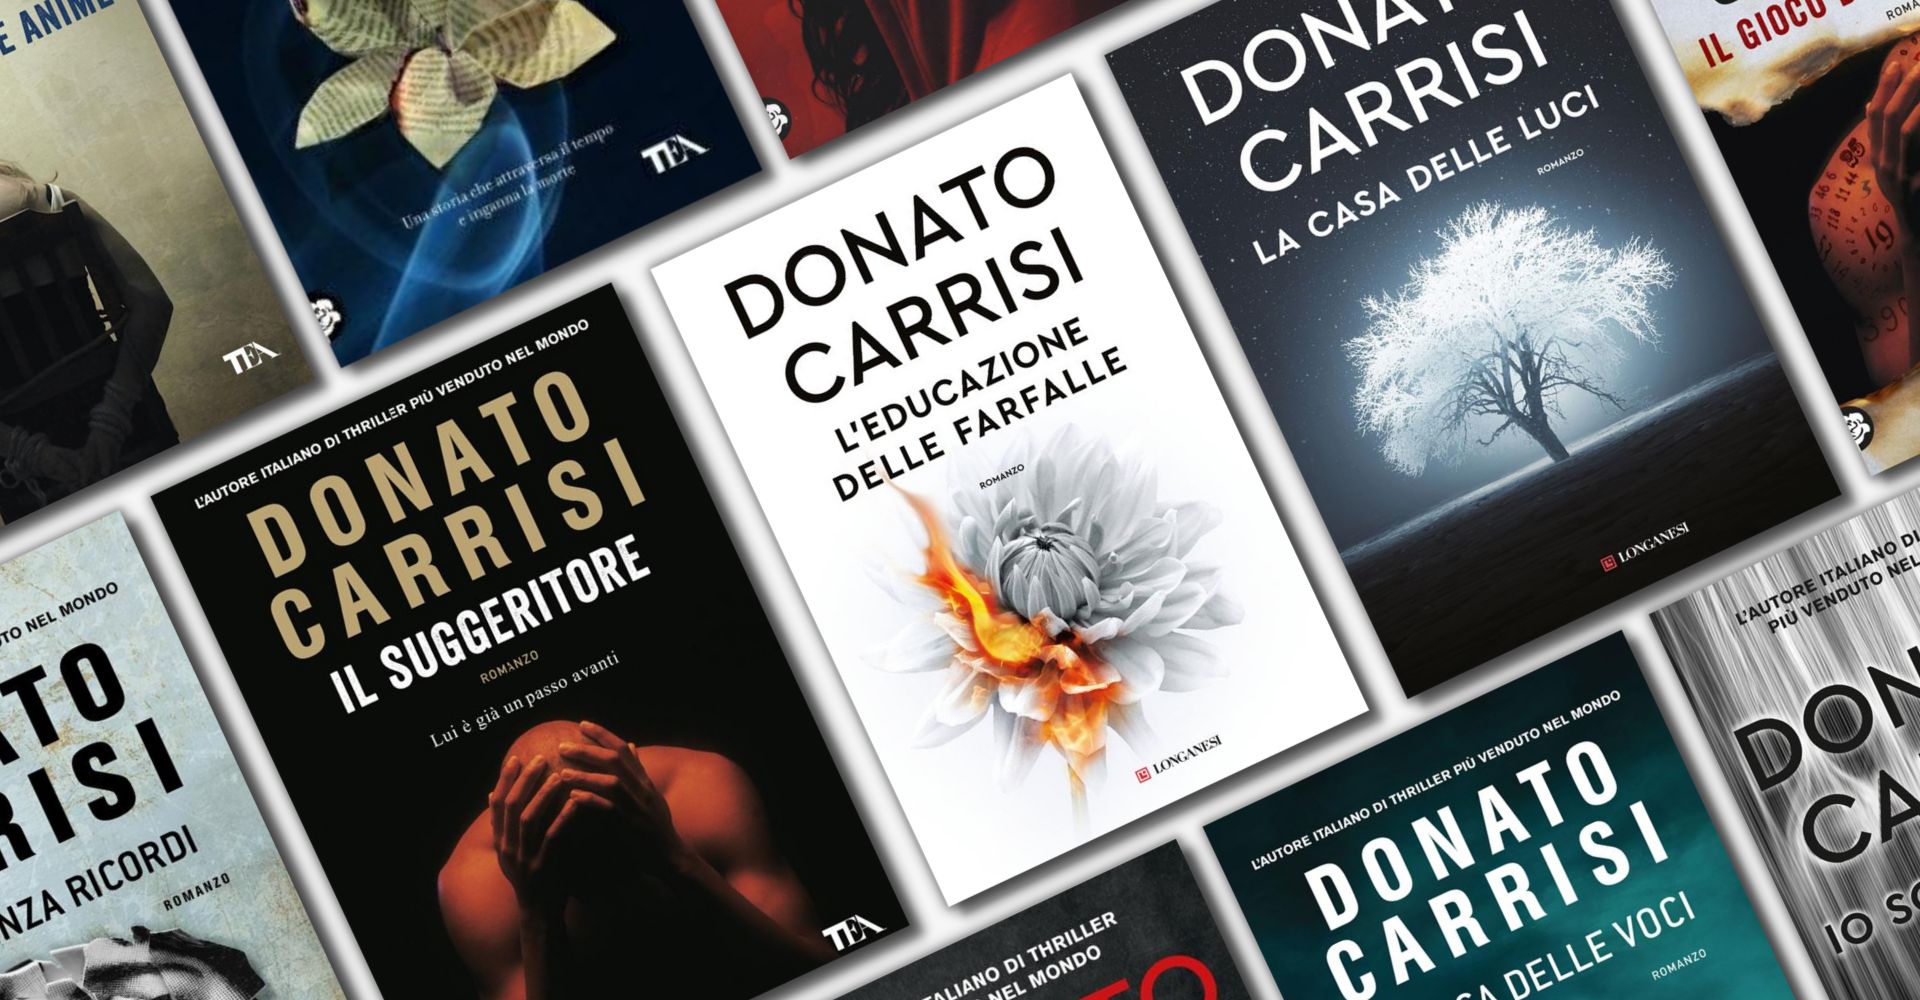 Donato Carrisi: i libri del maestro del thriller italiano